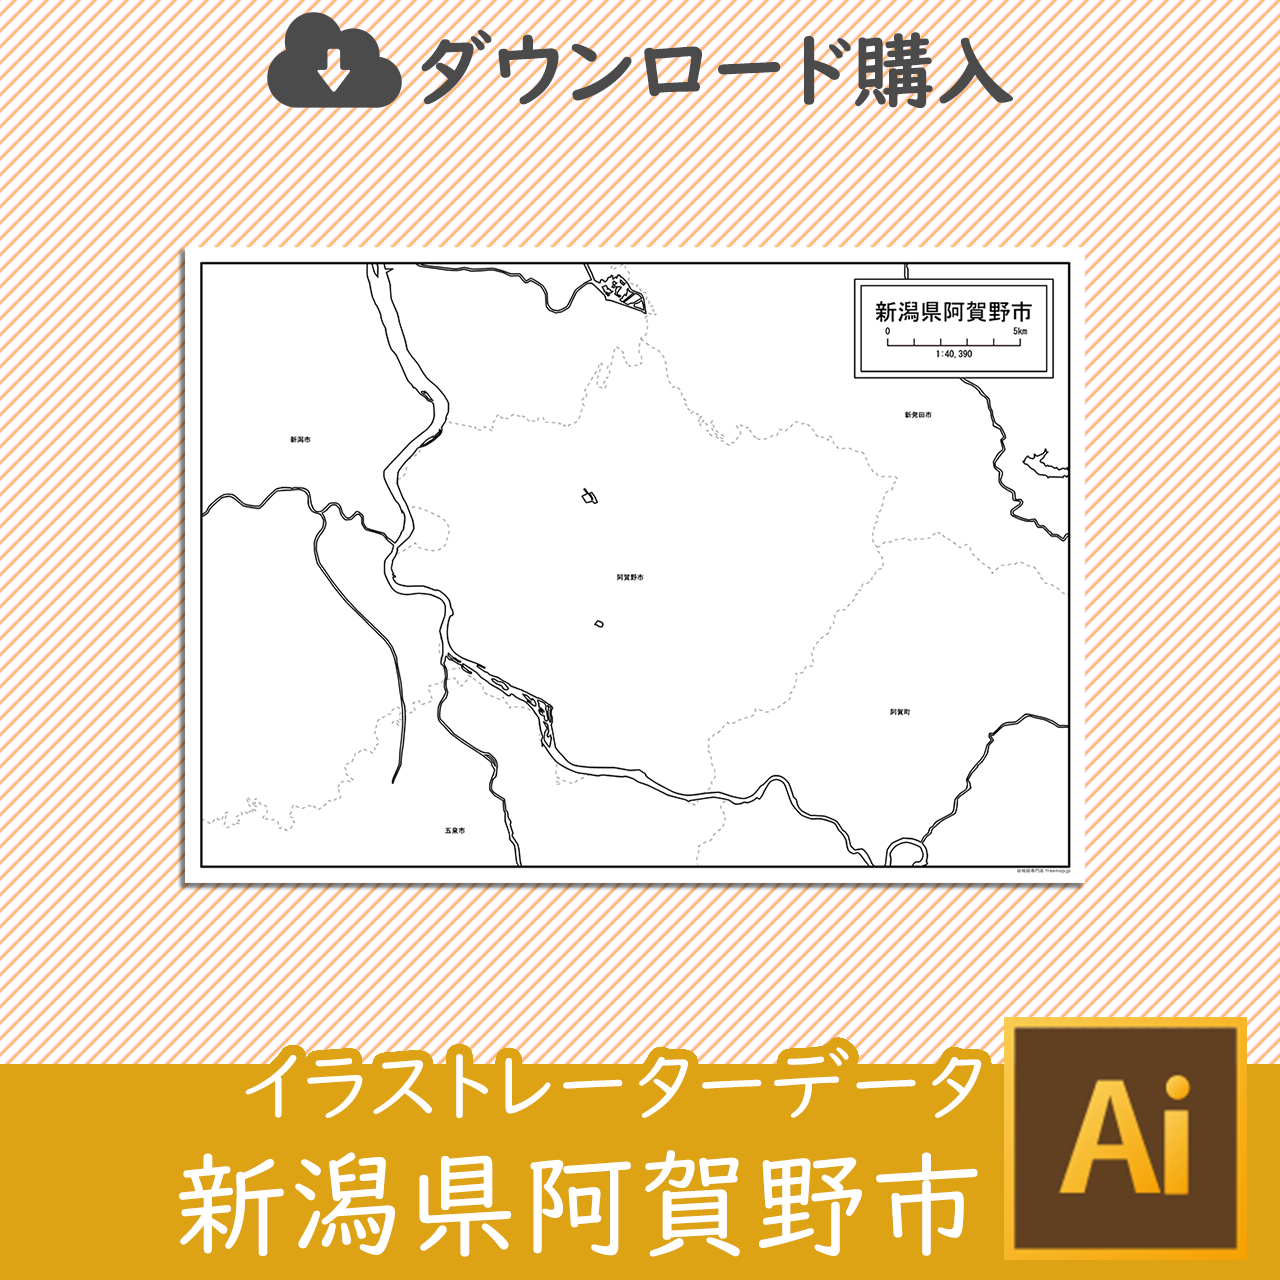 阿賀野市のaiデータのサムネイル画像